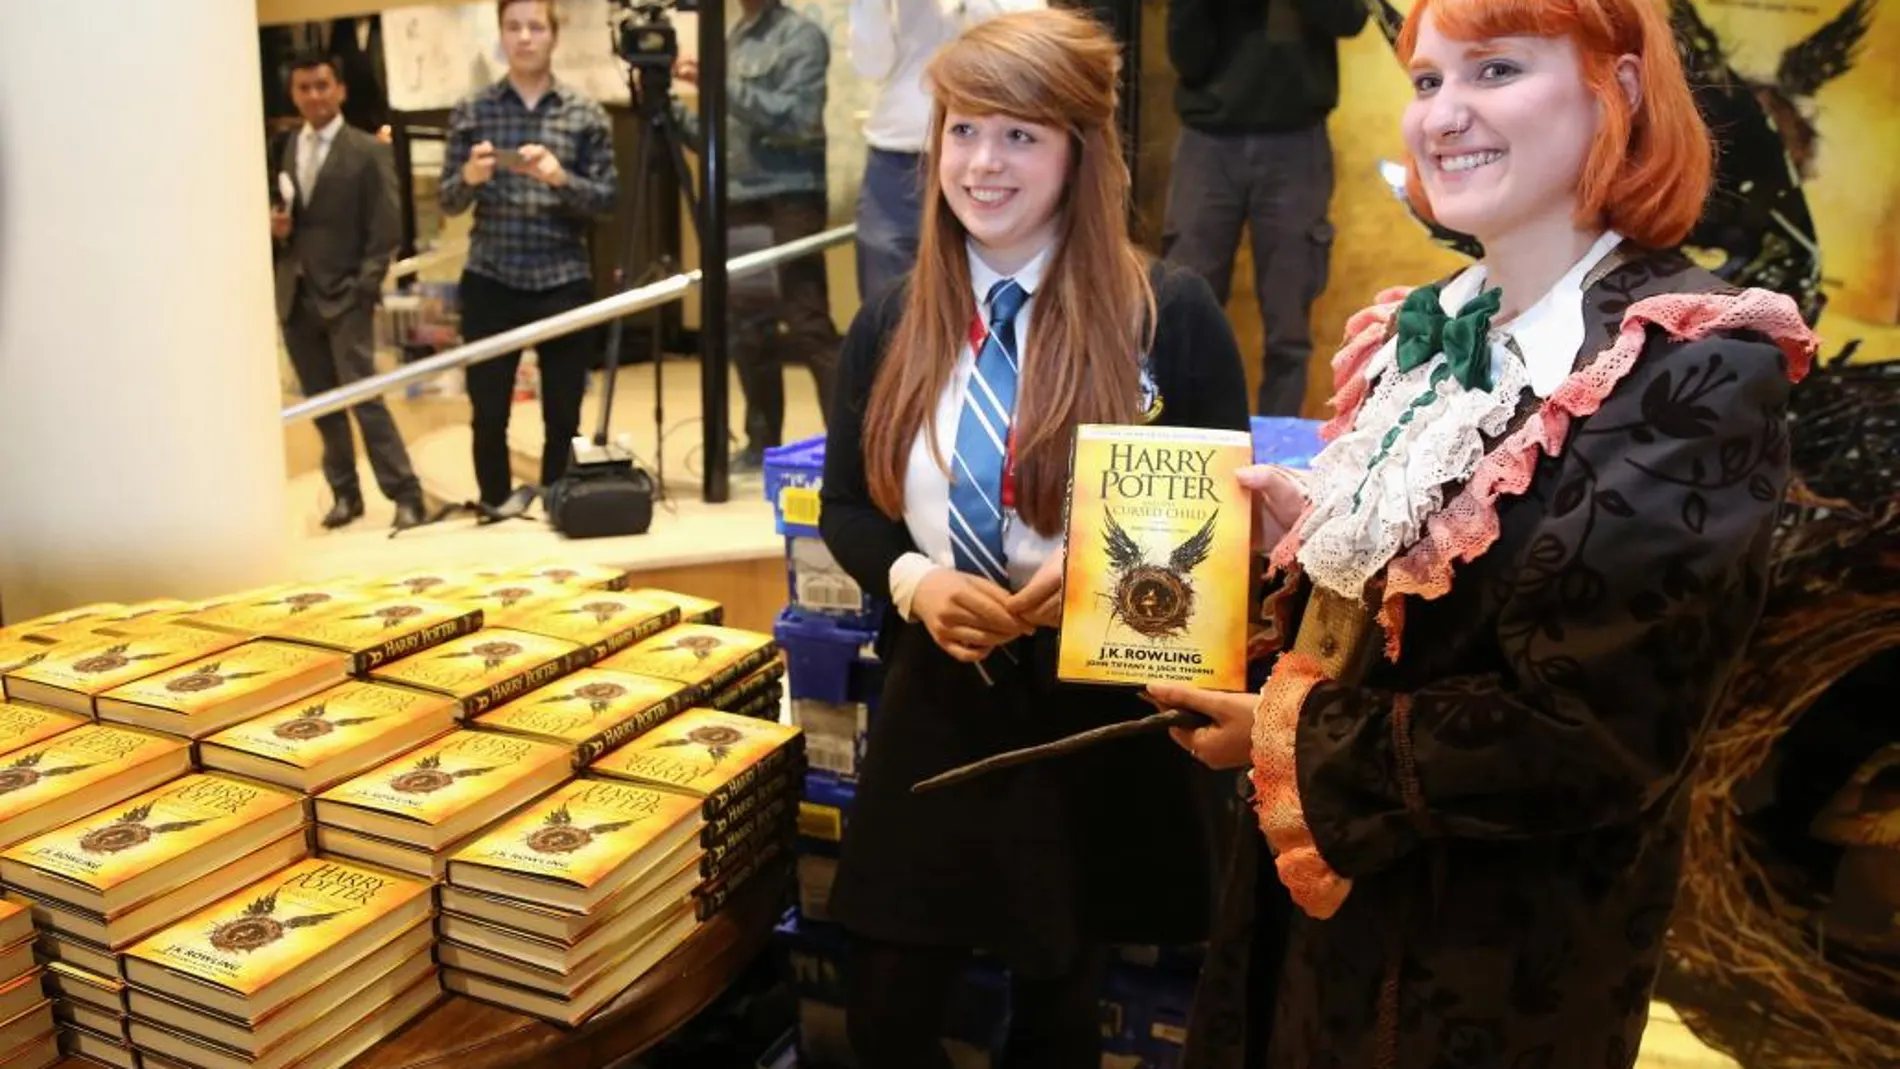 Cientos de seguidores de Harry Potter compraron el guión en las librerías británicas, muchas de ellas adornadas con figuras de brujas